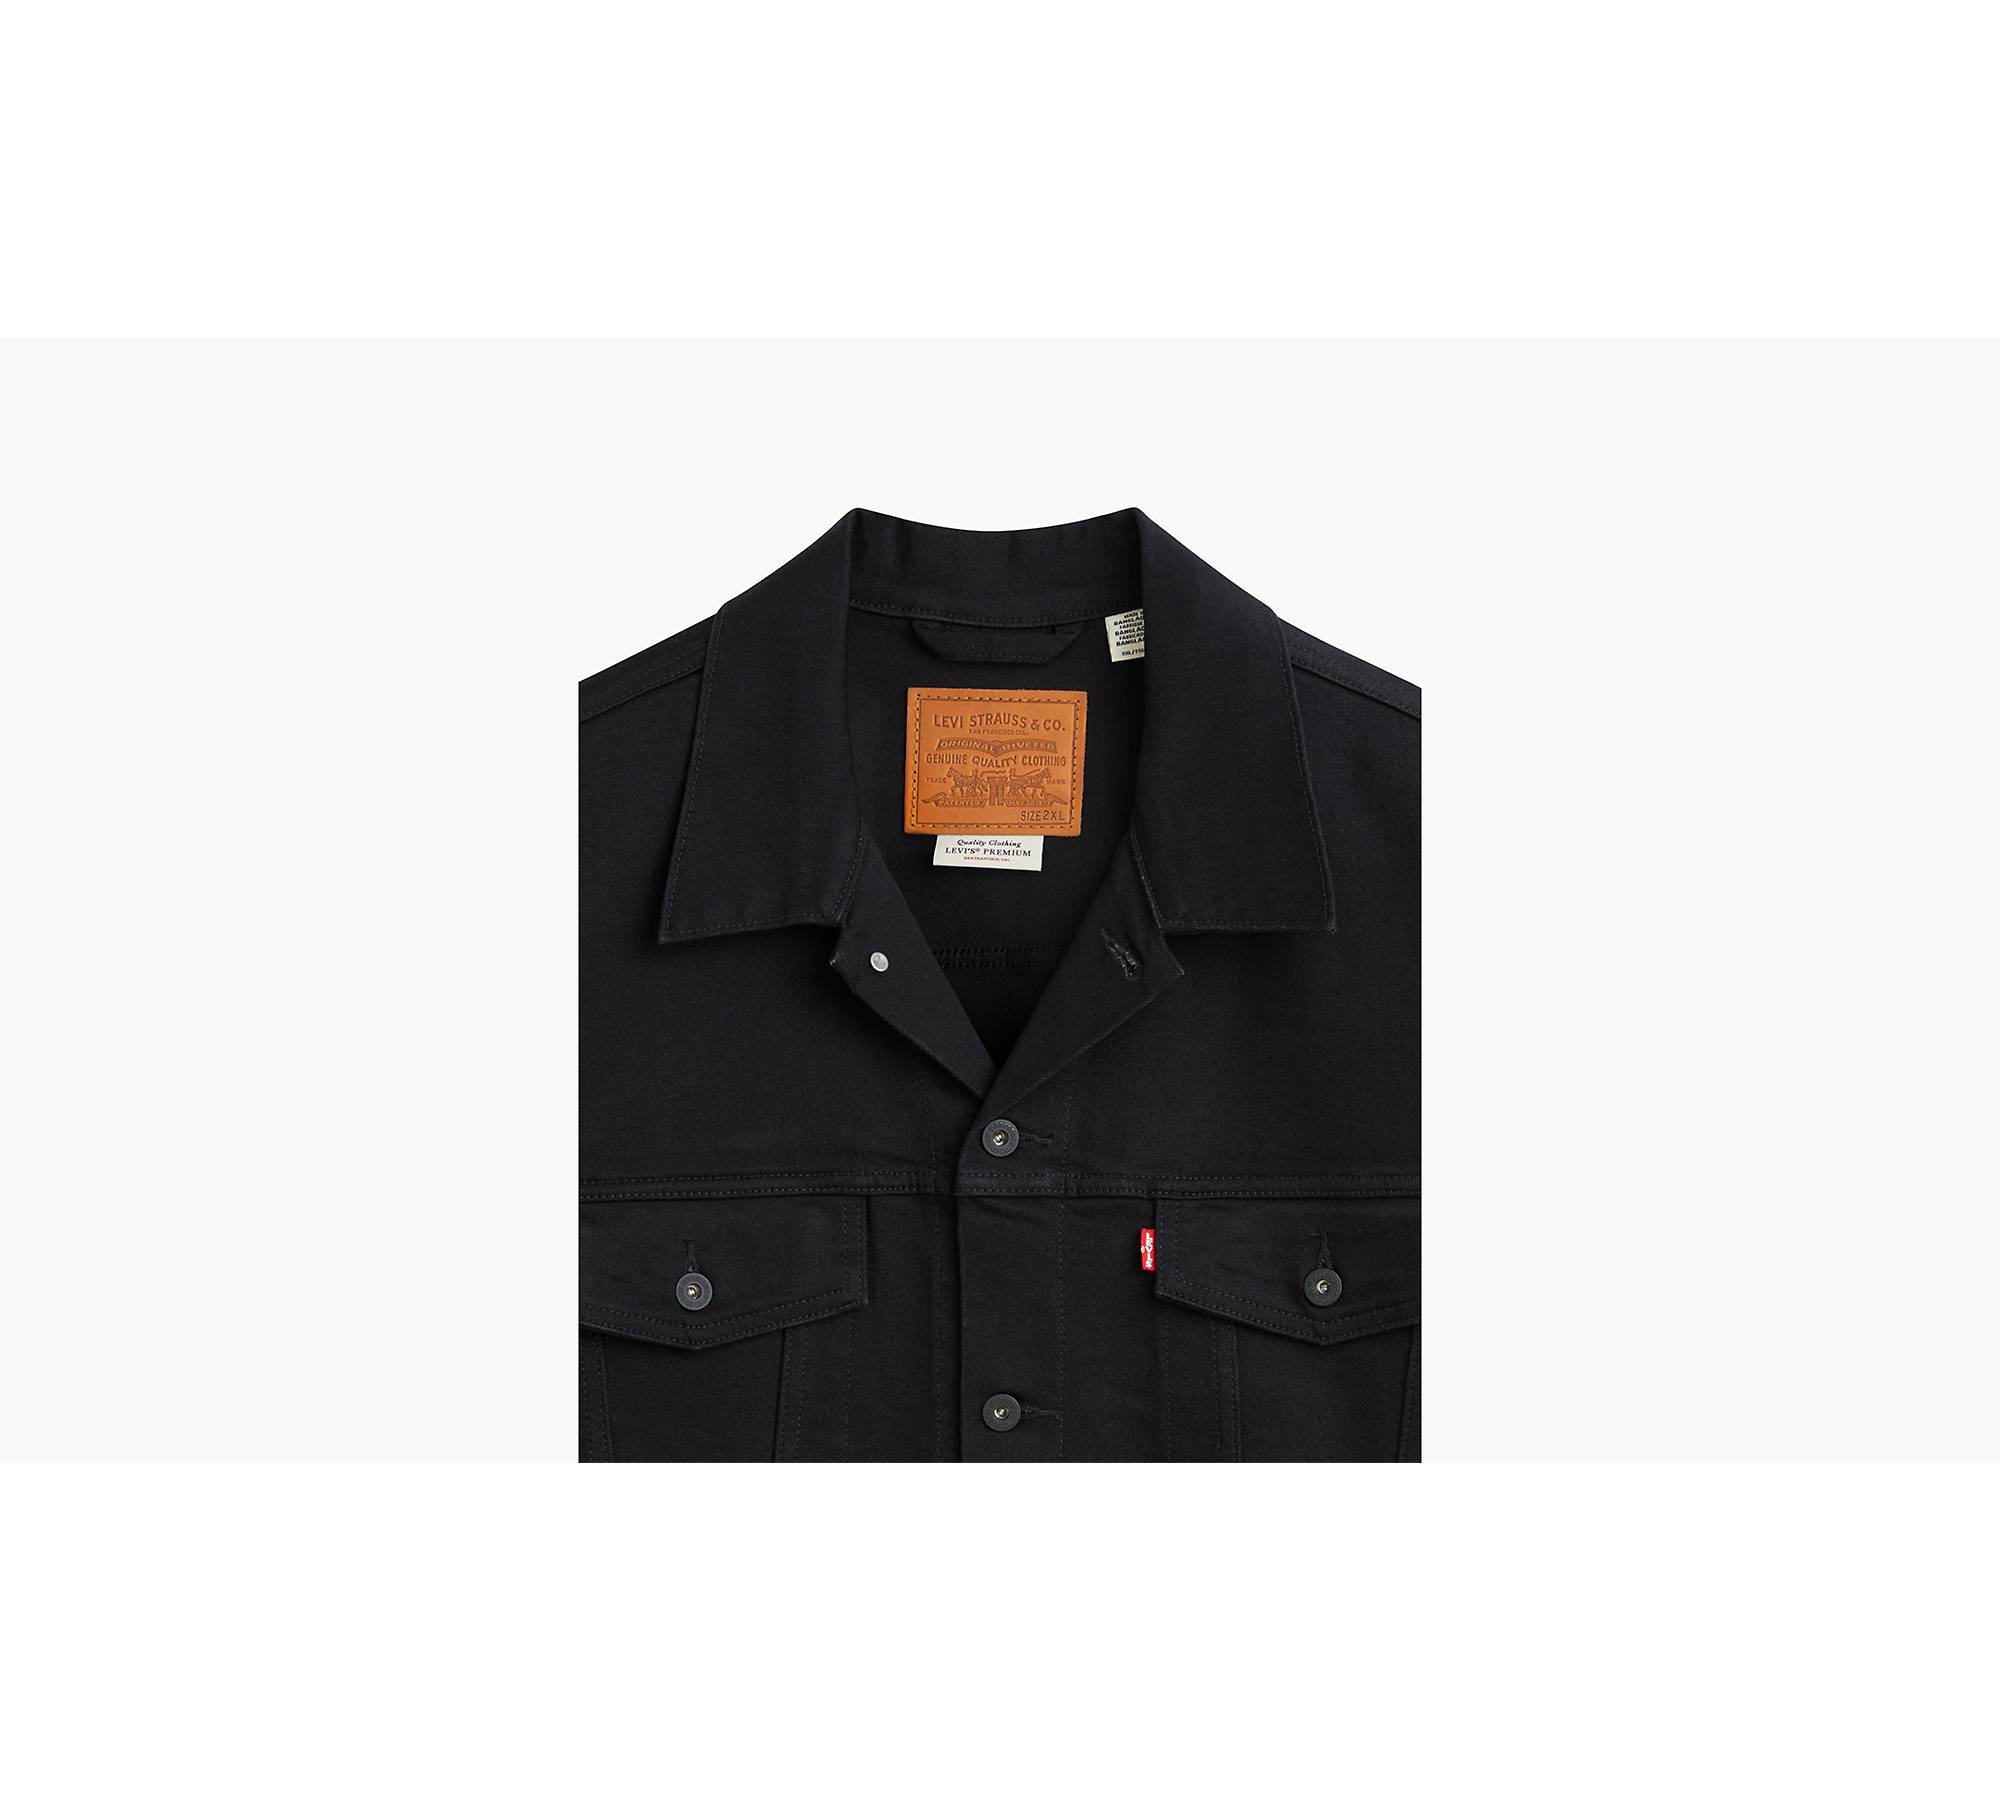 Louis Vuitton Bubble Damier Trucker Jacket BLACK. Size 36